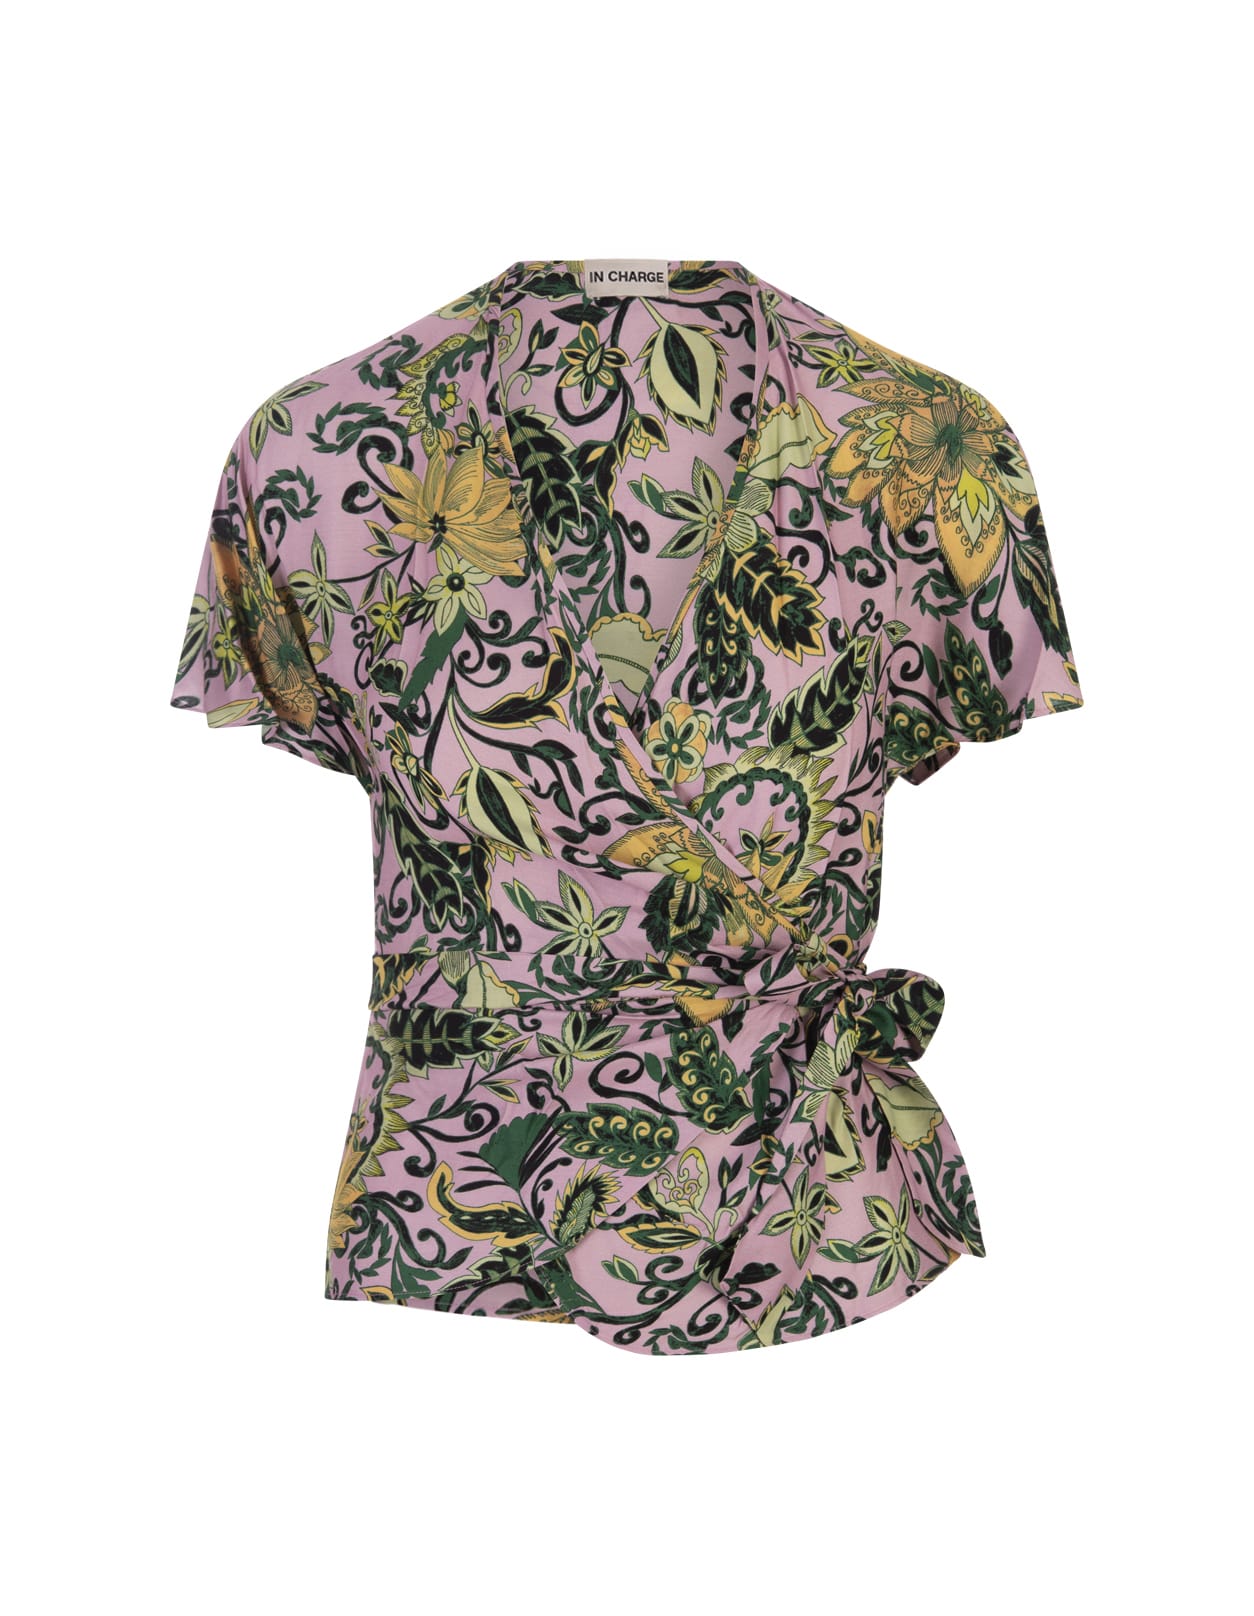 Shop Diane Von Furstenberg Delhi Reversible Top In Garden Paisley Mint Green And Pink